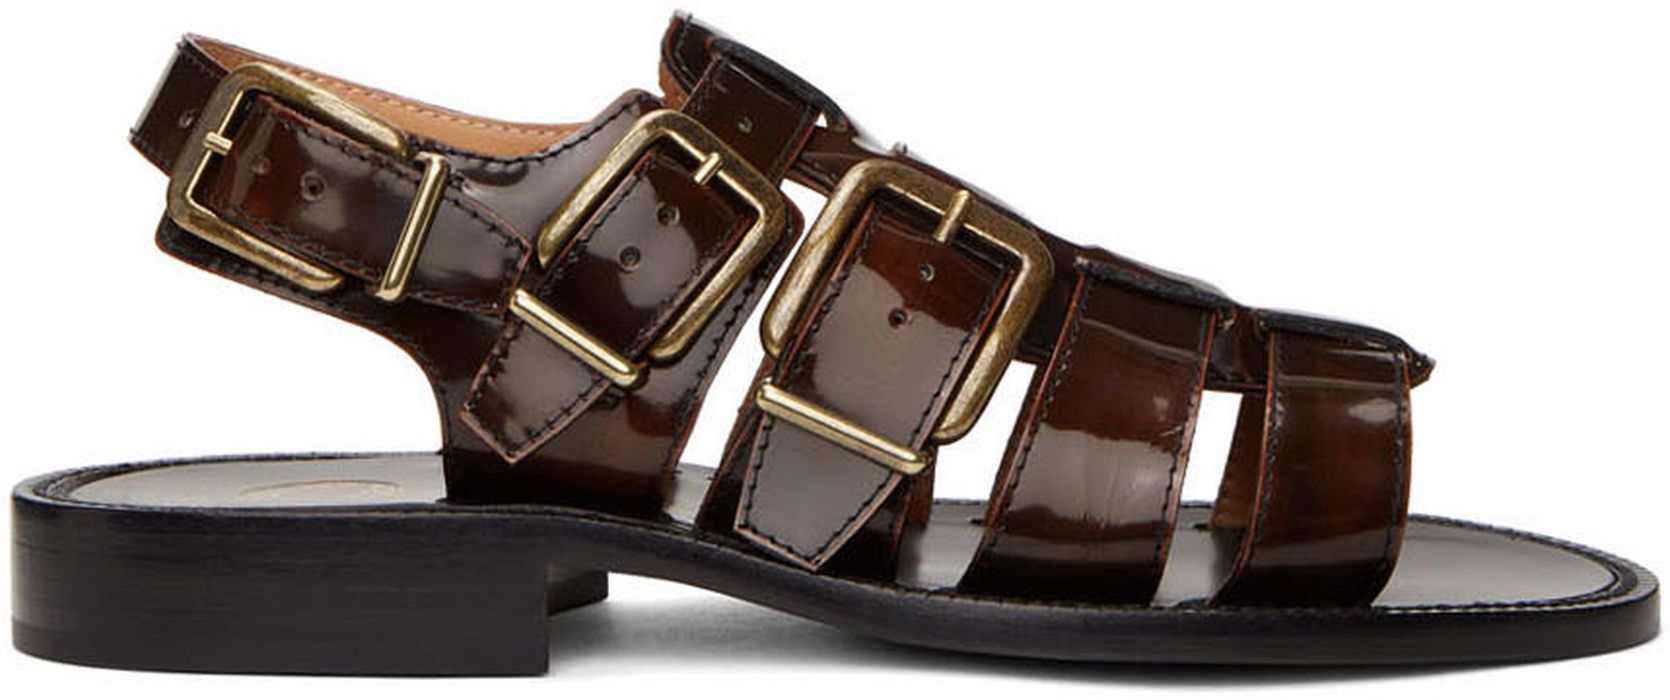 Dries Van Noten Black & Brown Patent Sandals